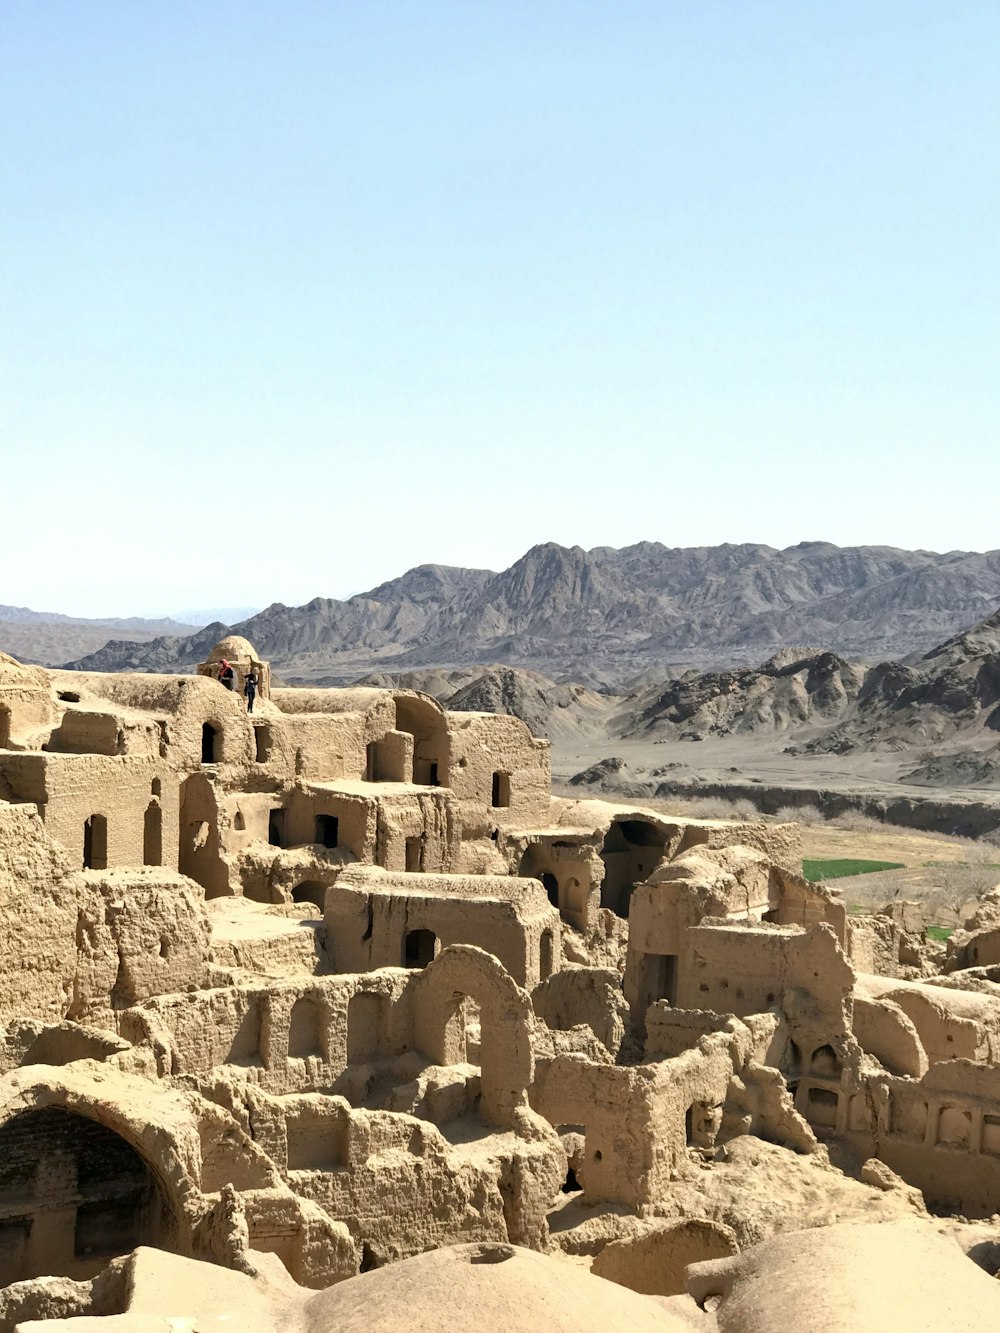 Una vista de un pueblo en medio del desierto